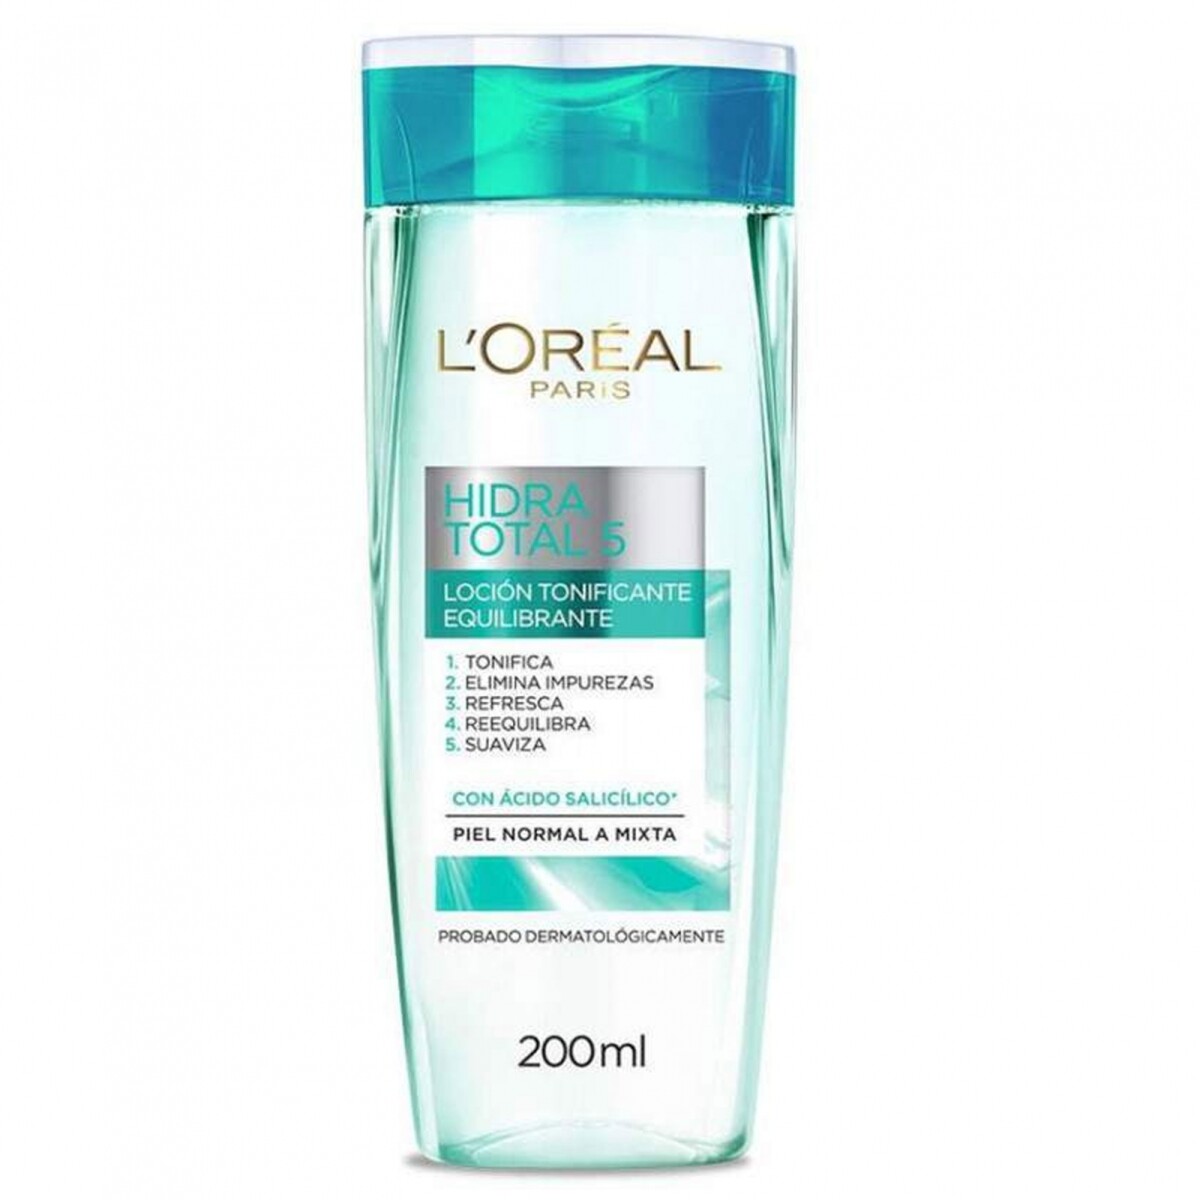 Loción Tonificante L'Oréal Hidra Total 5 Tónico Piel Normal a Mixta 200 Ml 